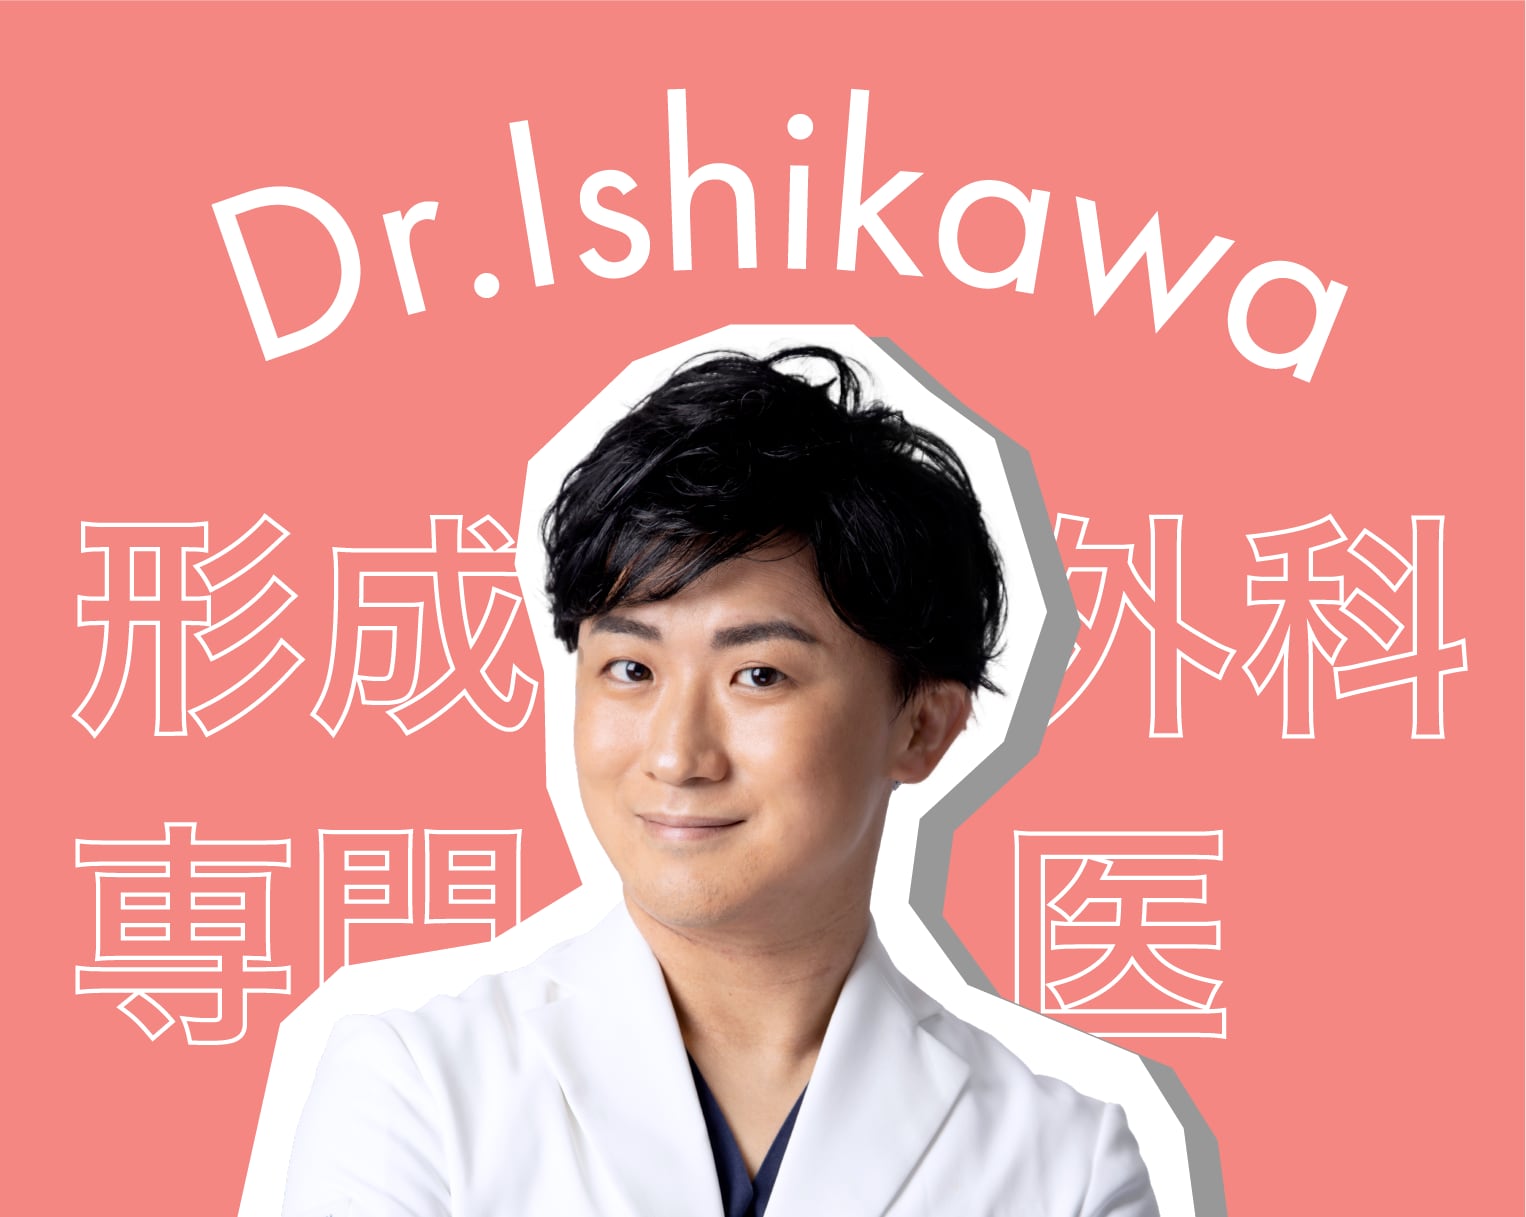 大宮東口院二人目の形成外科専門医、石川先生のご紹介